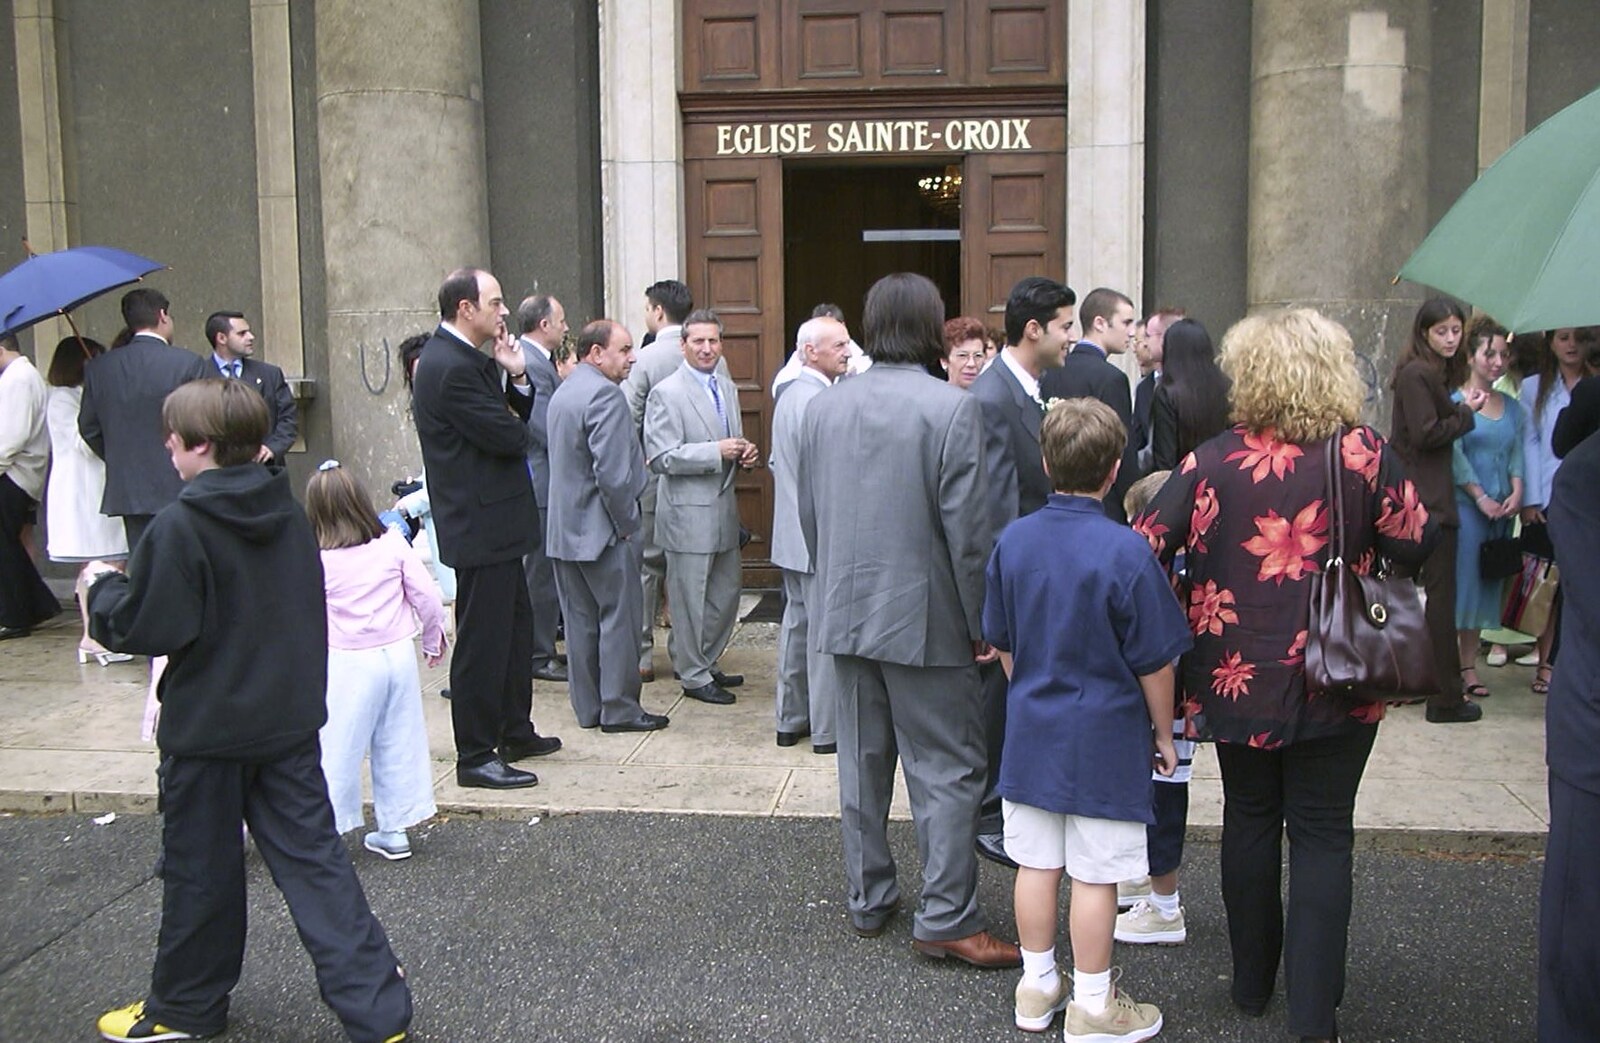 Milling around outside the Eglise Sainte-Croix from Elisa and Luigi's Wedding, Carouge, Geneva, Switzerland - 20th July 2001